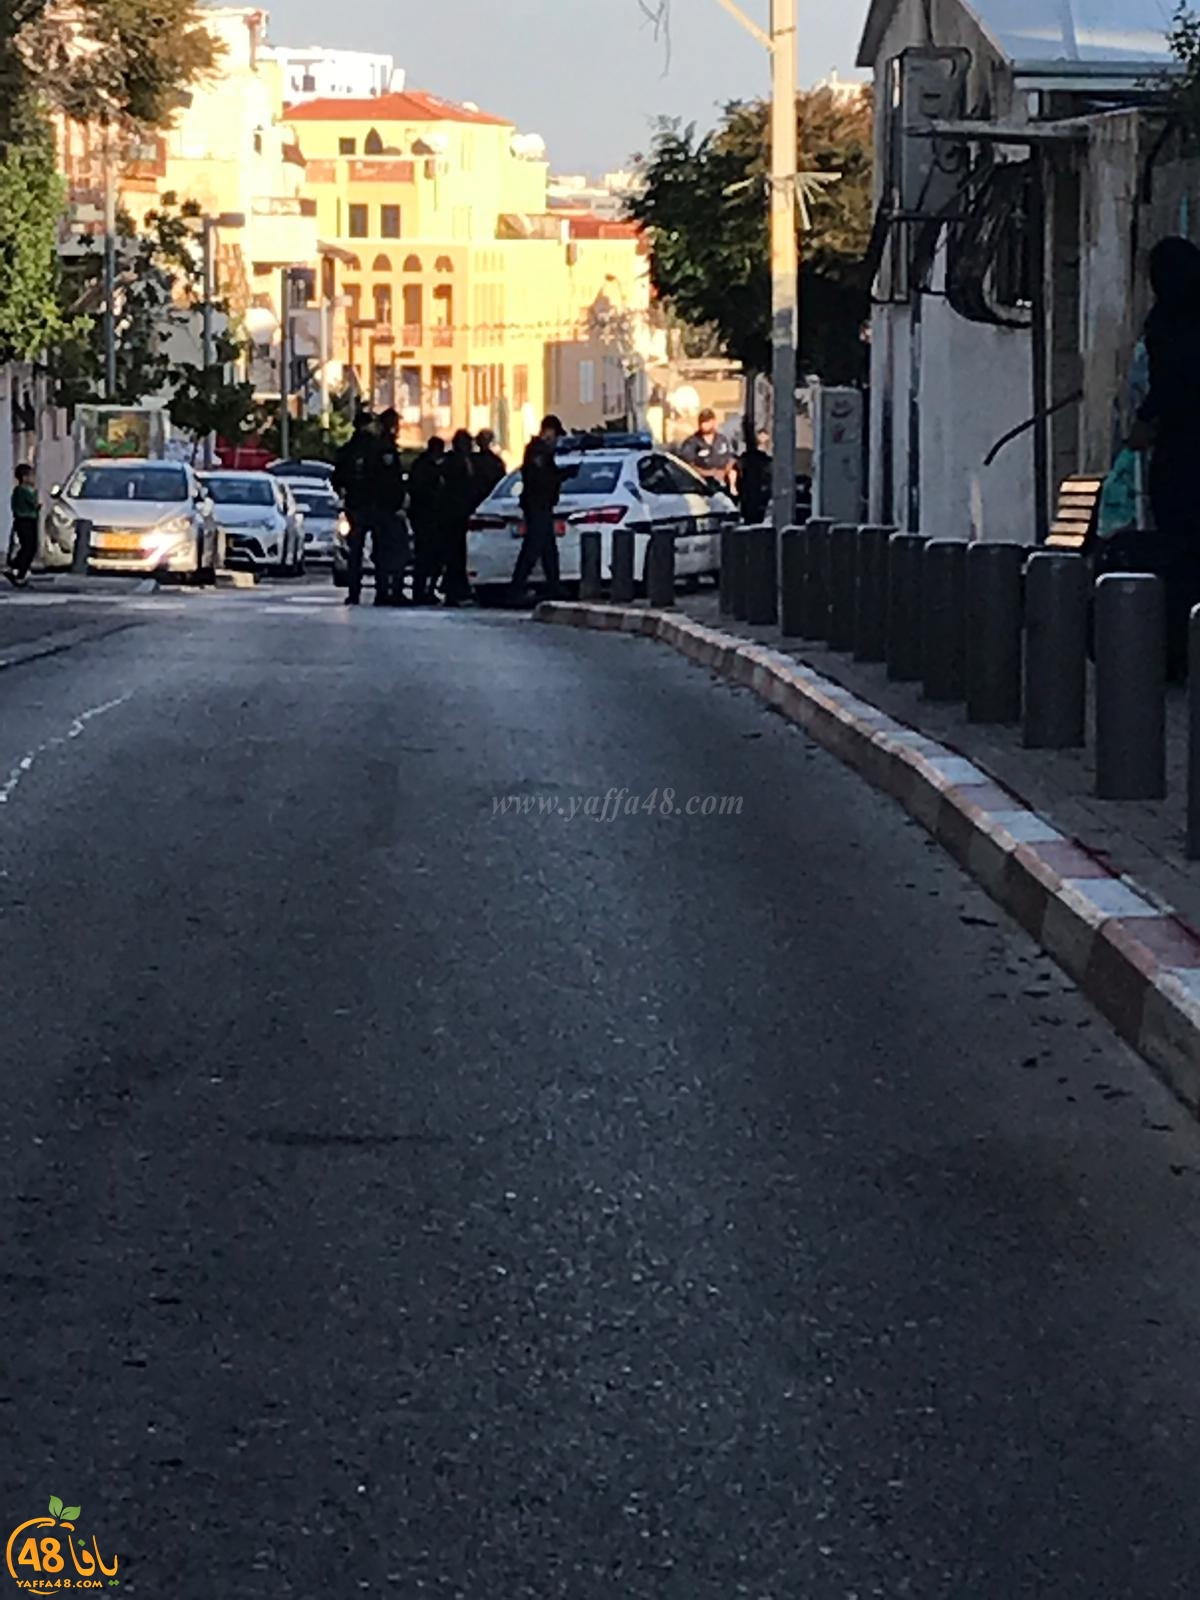  من جديد - الشرطة تعتدي على قاصرين في شارع مندس فرانس بيافا 